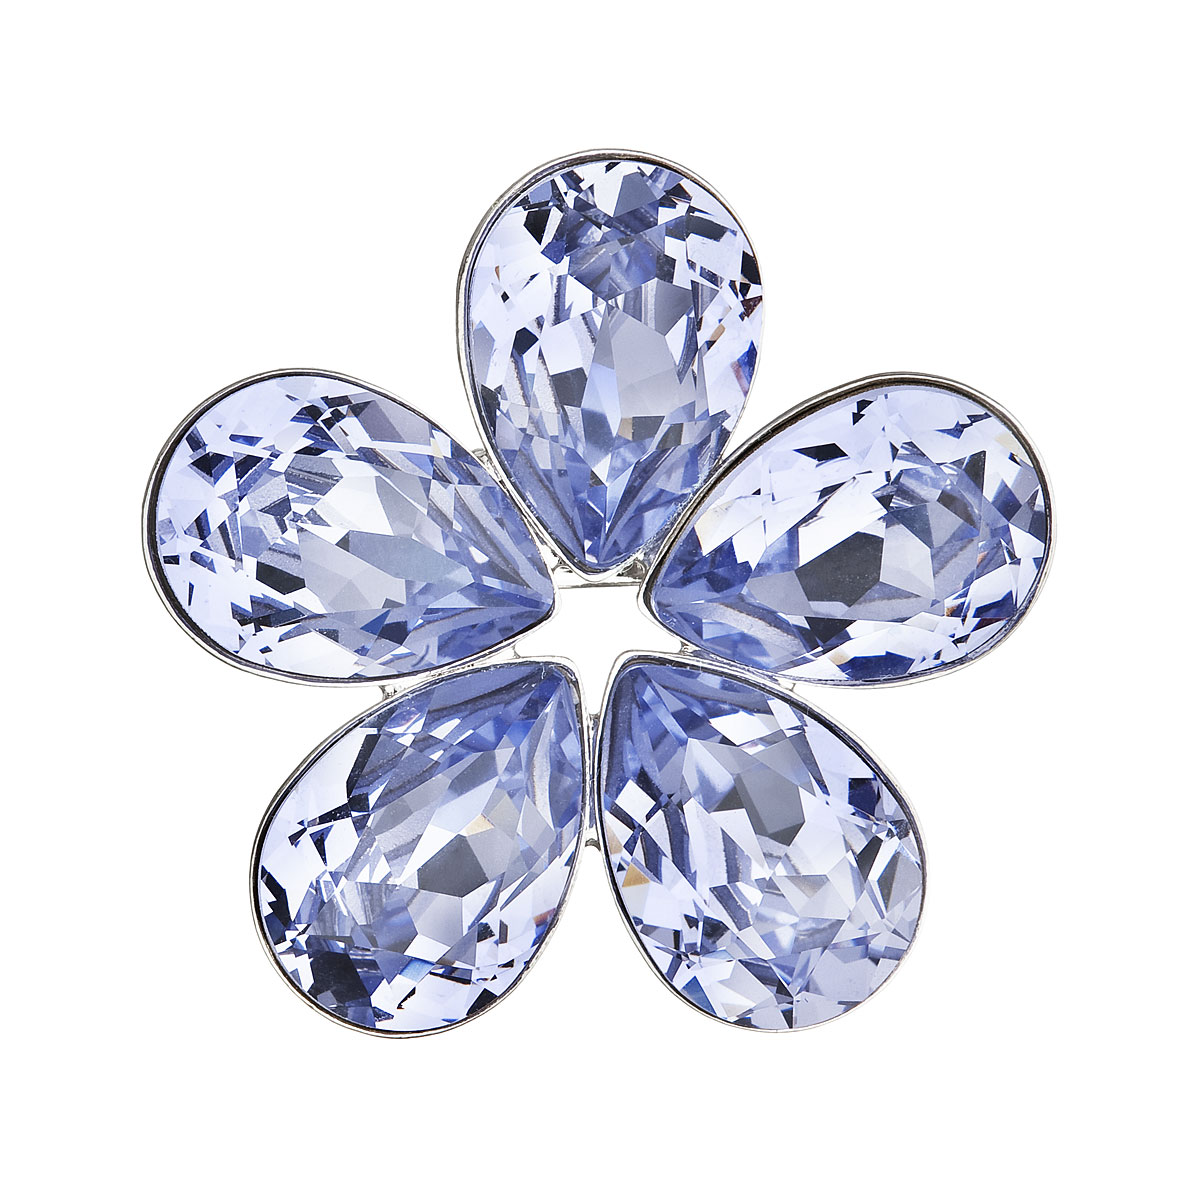 Brož bižuterie se Swarovski krystaly modrá kytička 58003.3 lavender